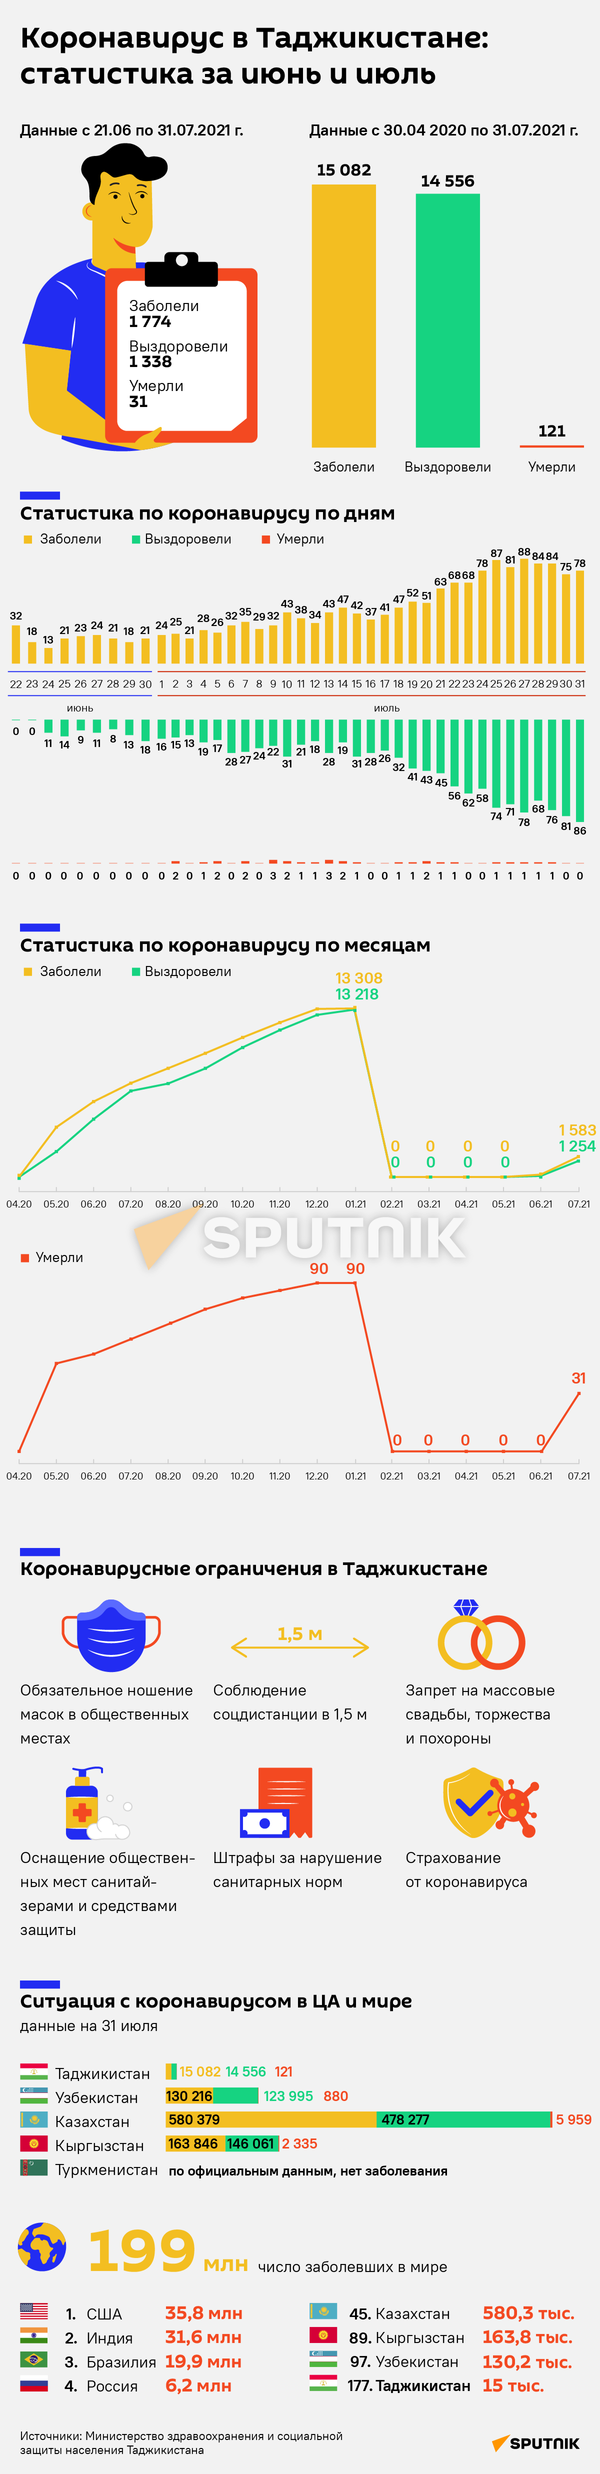 Коронавирус в Таджикистане: статистика за июнь и июль - Sputnik Таджикистан